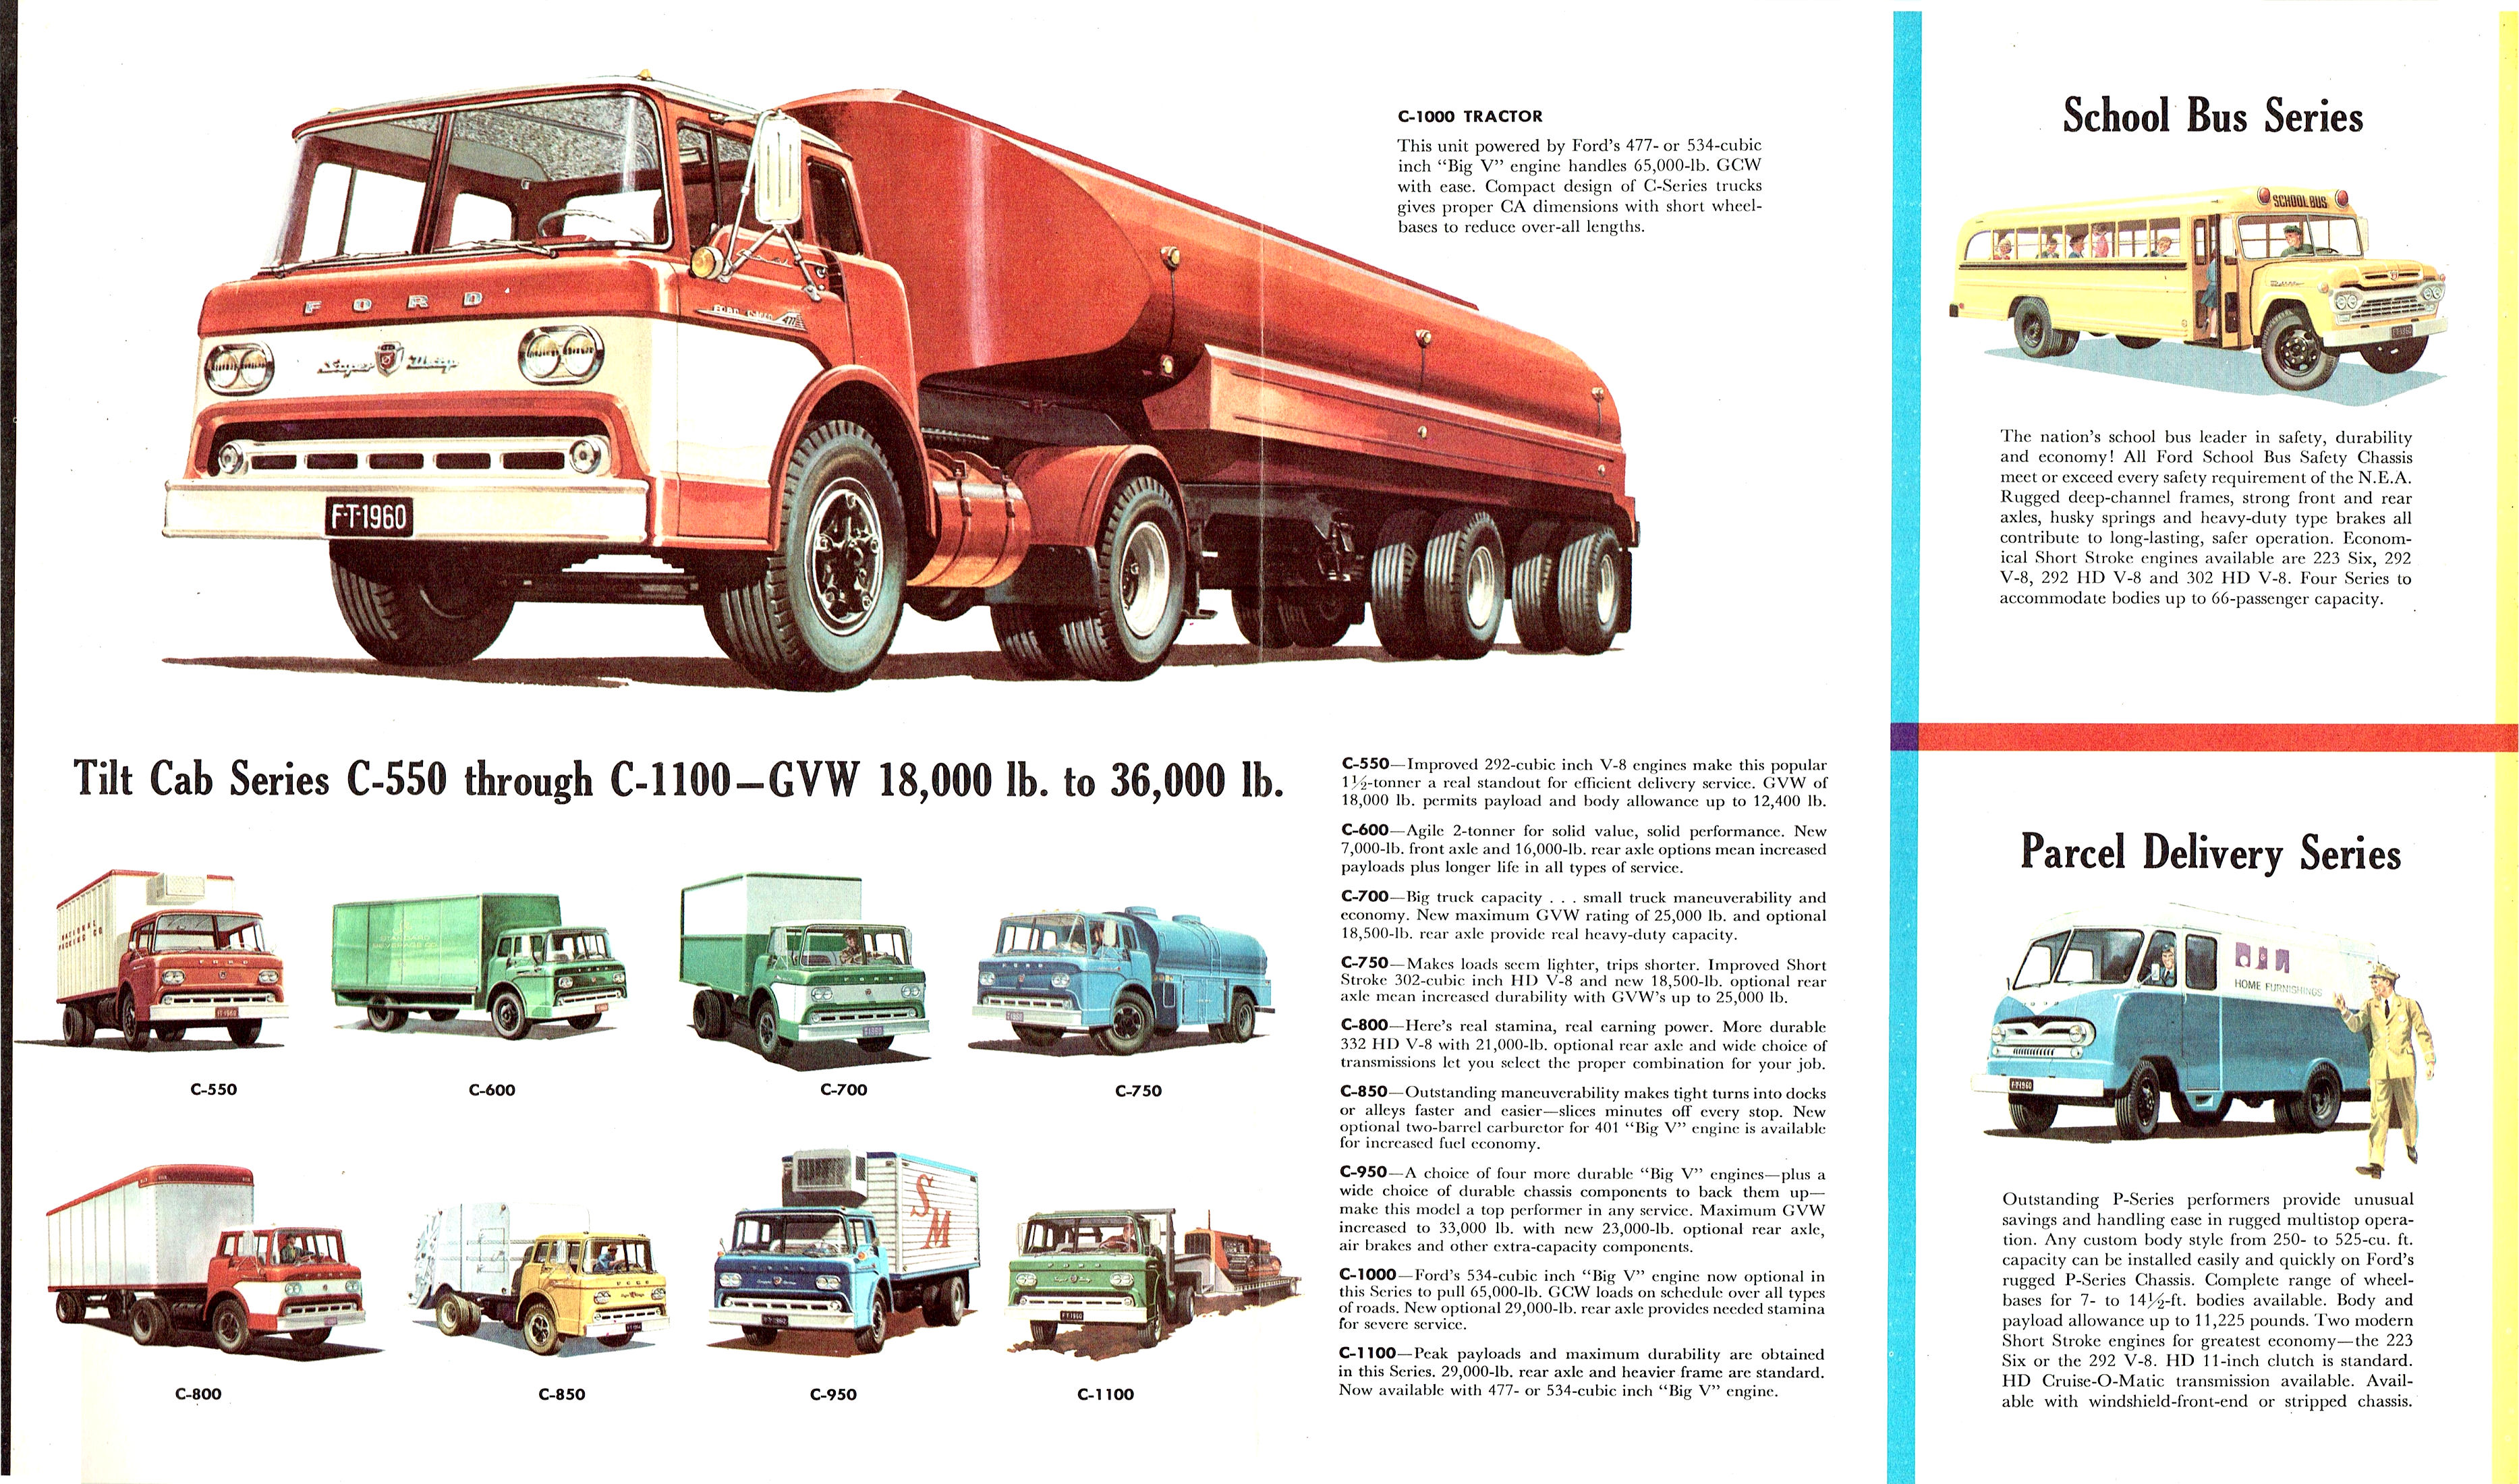 1960 Ford Trucks Full Line Folder (Rev)-04-05